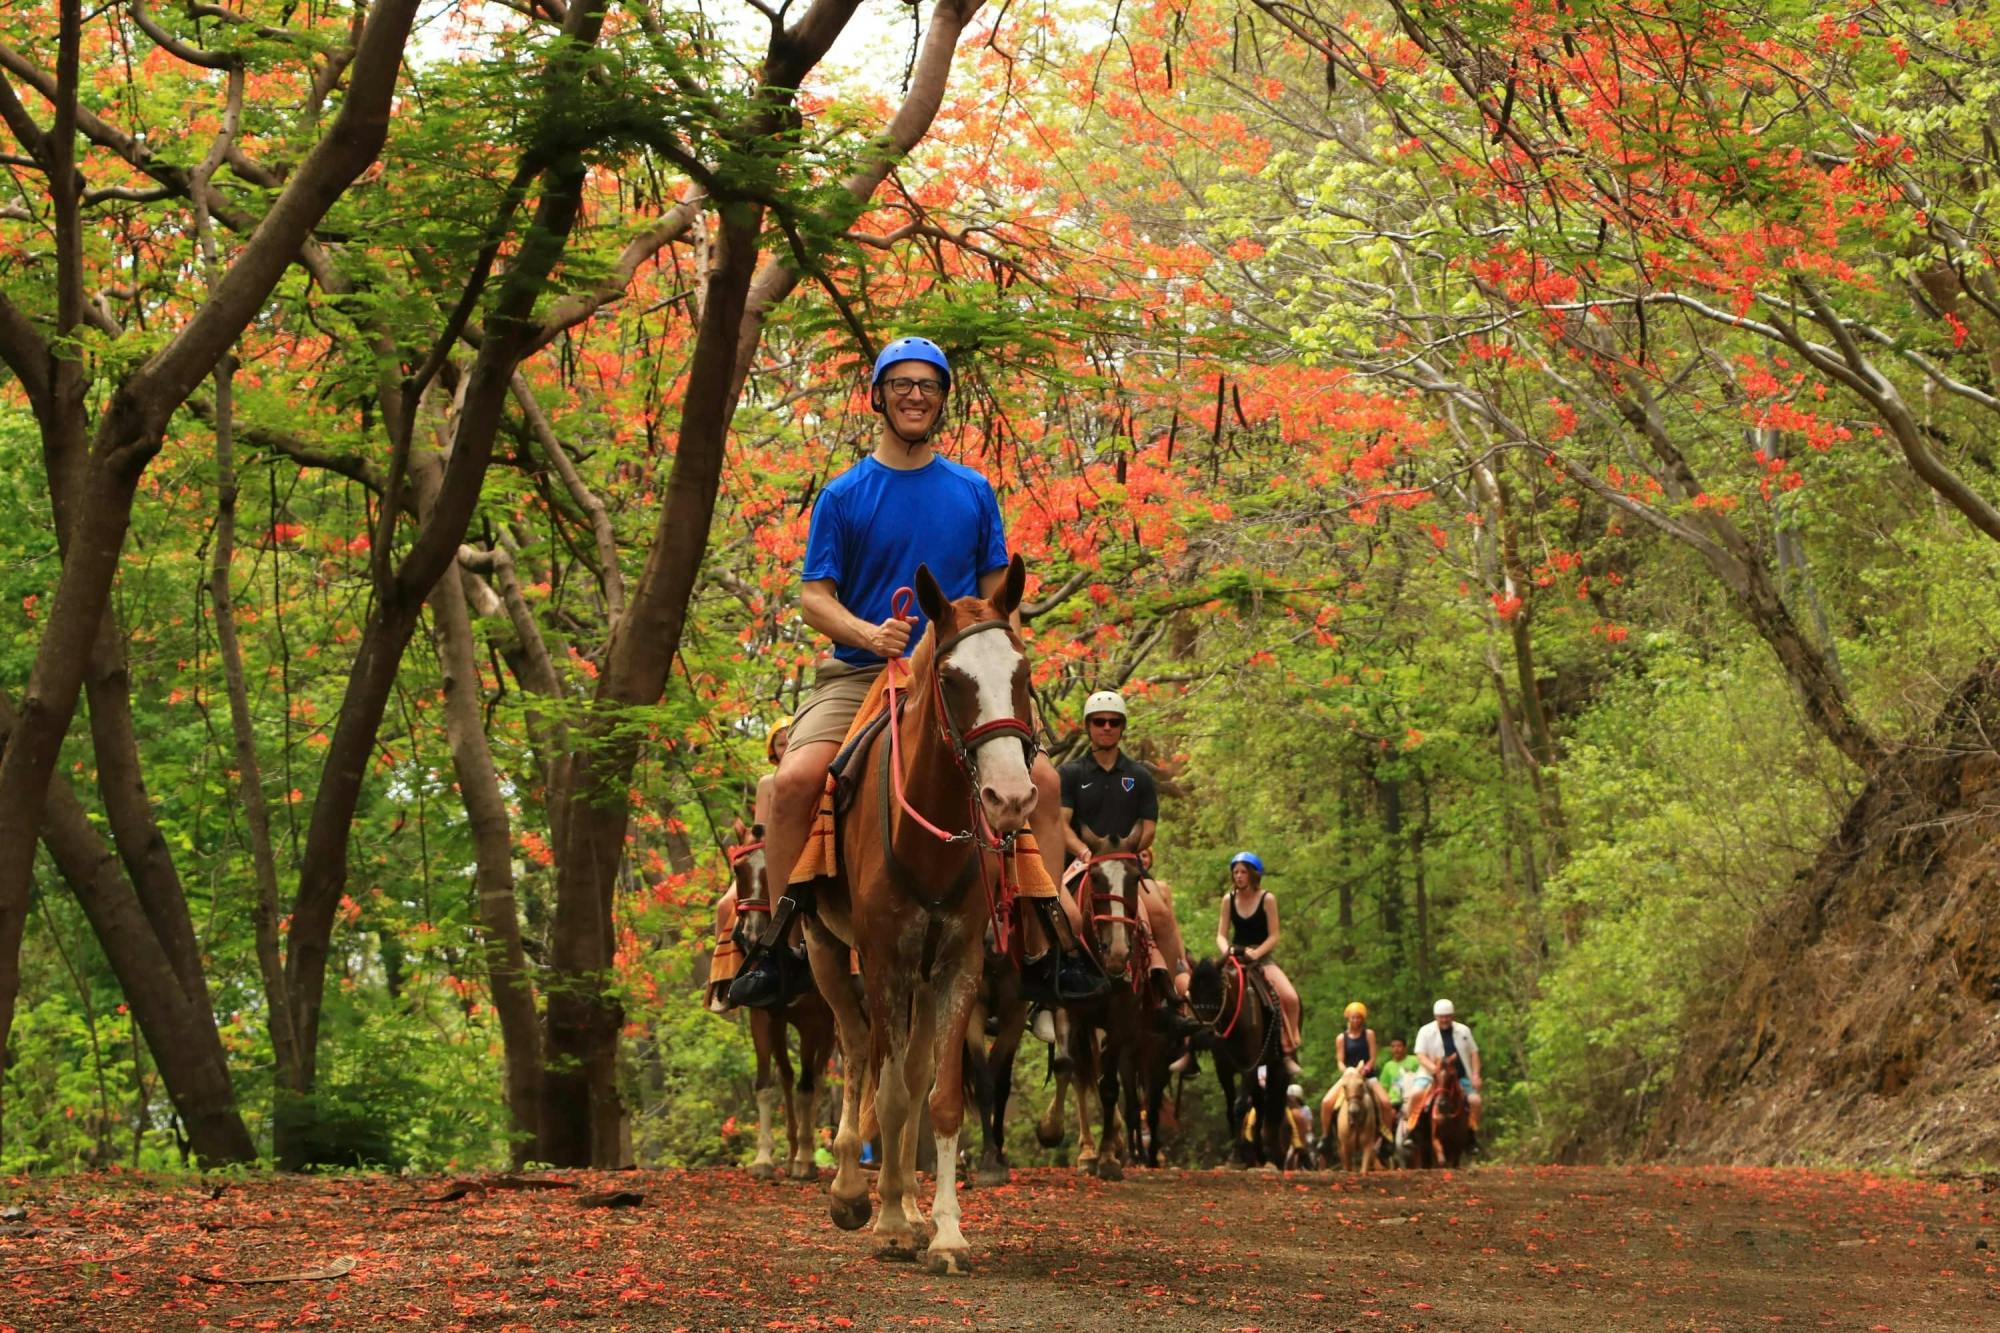 Diamante Eco Park Horse Riding Tour